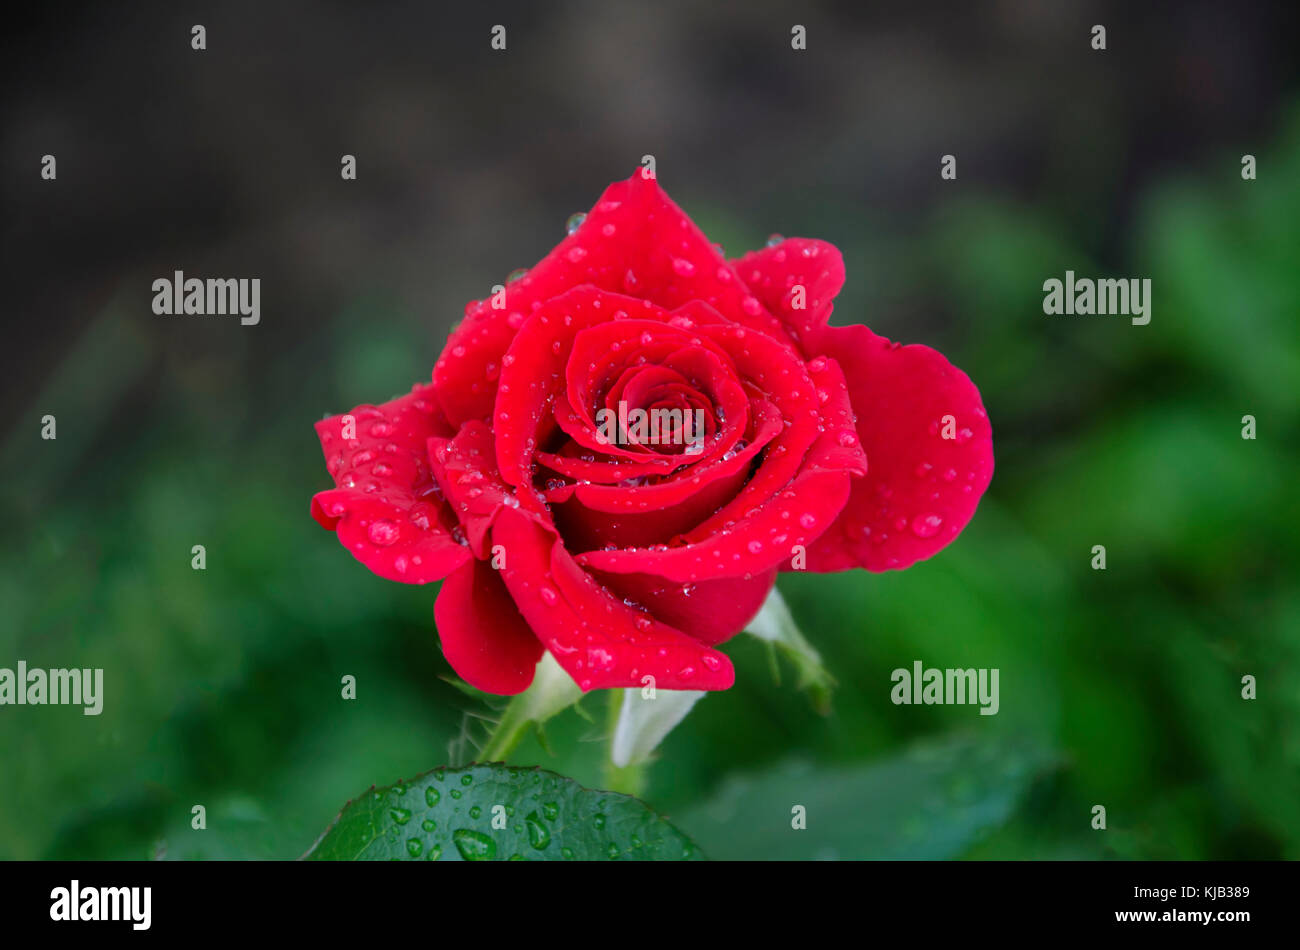 In estate in giardino una bella rosa rossa fiore con un profumo gradevole, con goccioline di acqua dopo una pioggia Foto Stock